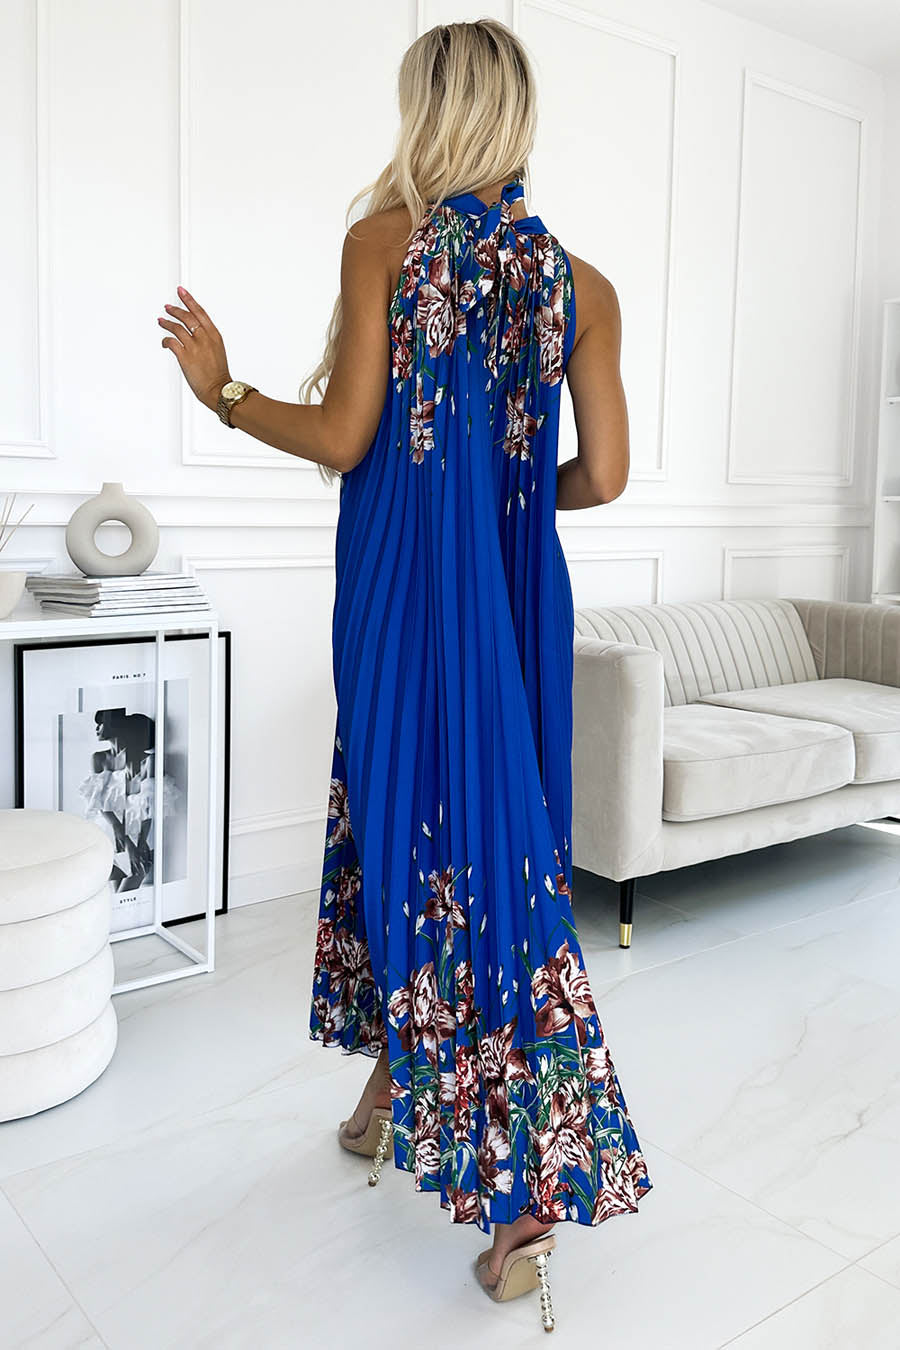 Γυναικείο φόρεμα Ester, Μπλε 3